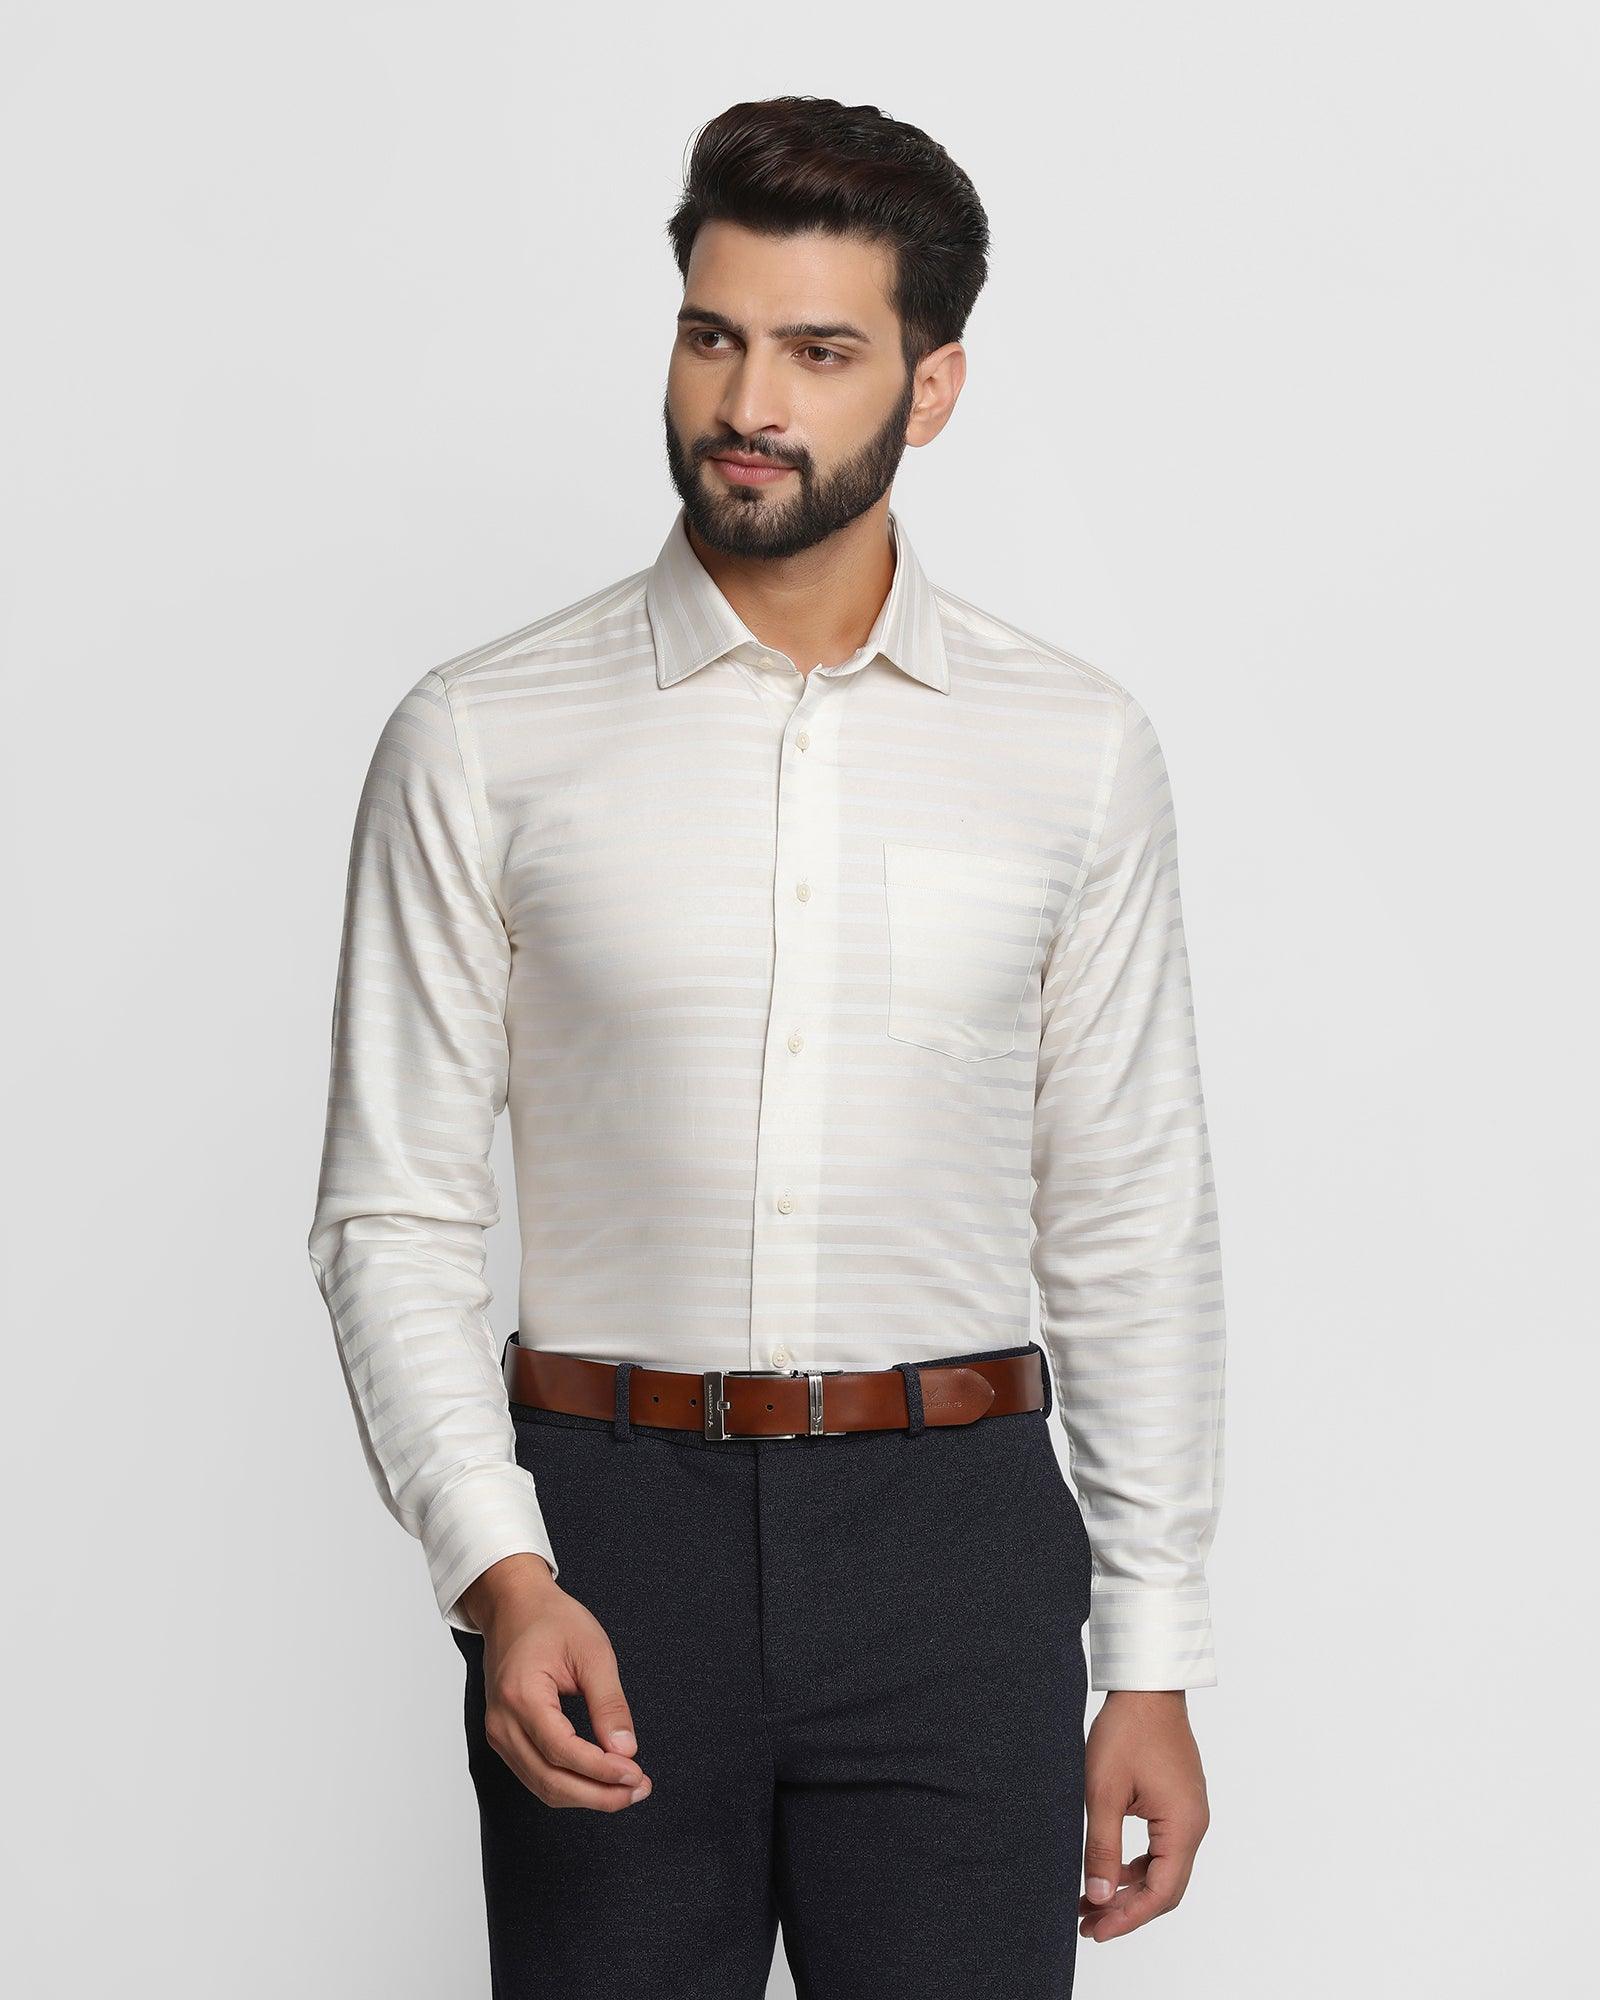 Formal Cream Striped Shirt - Mentos